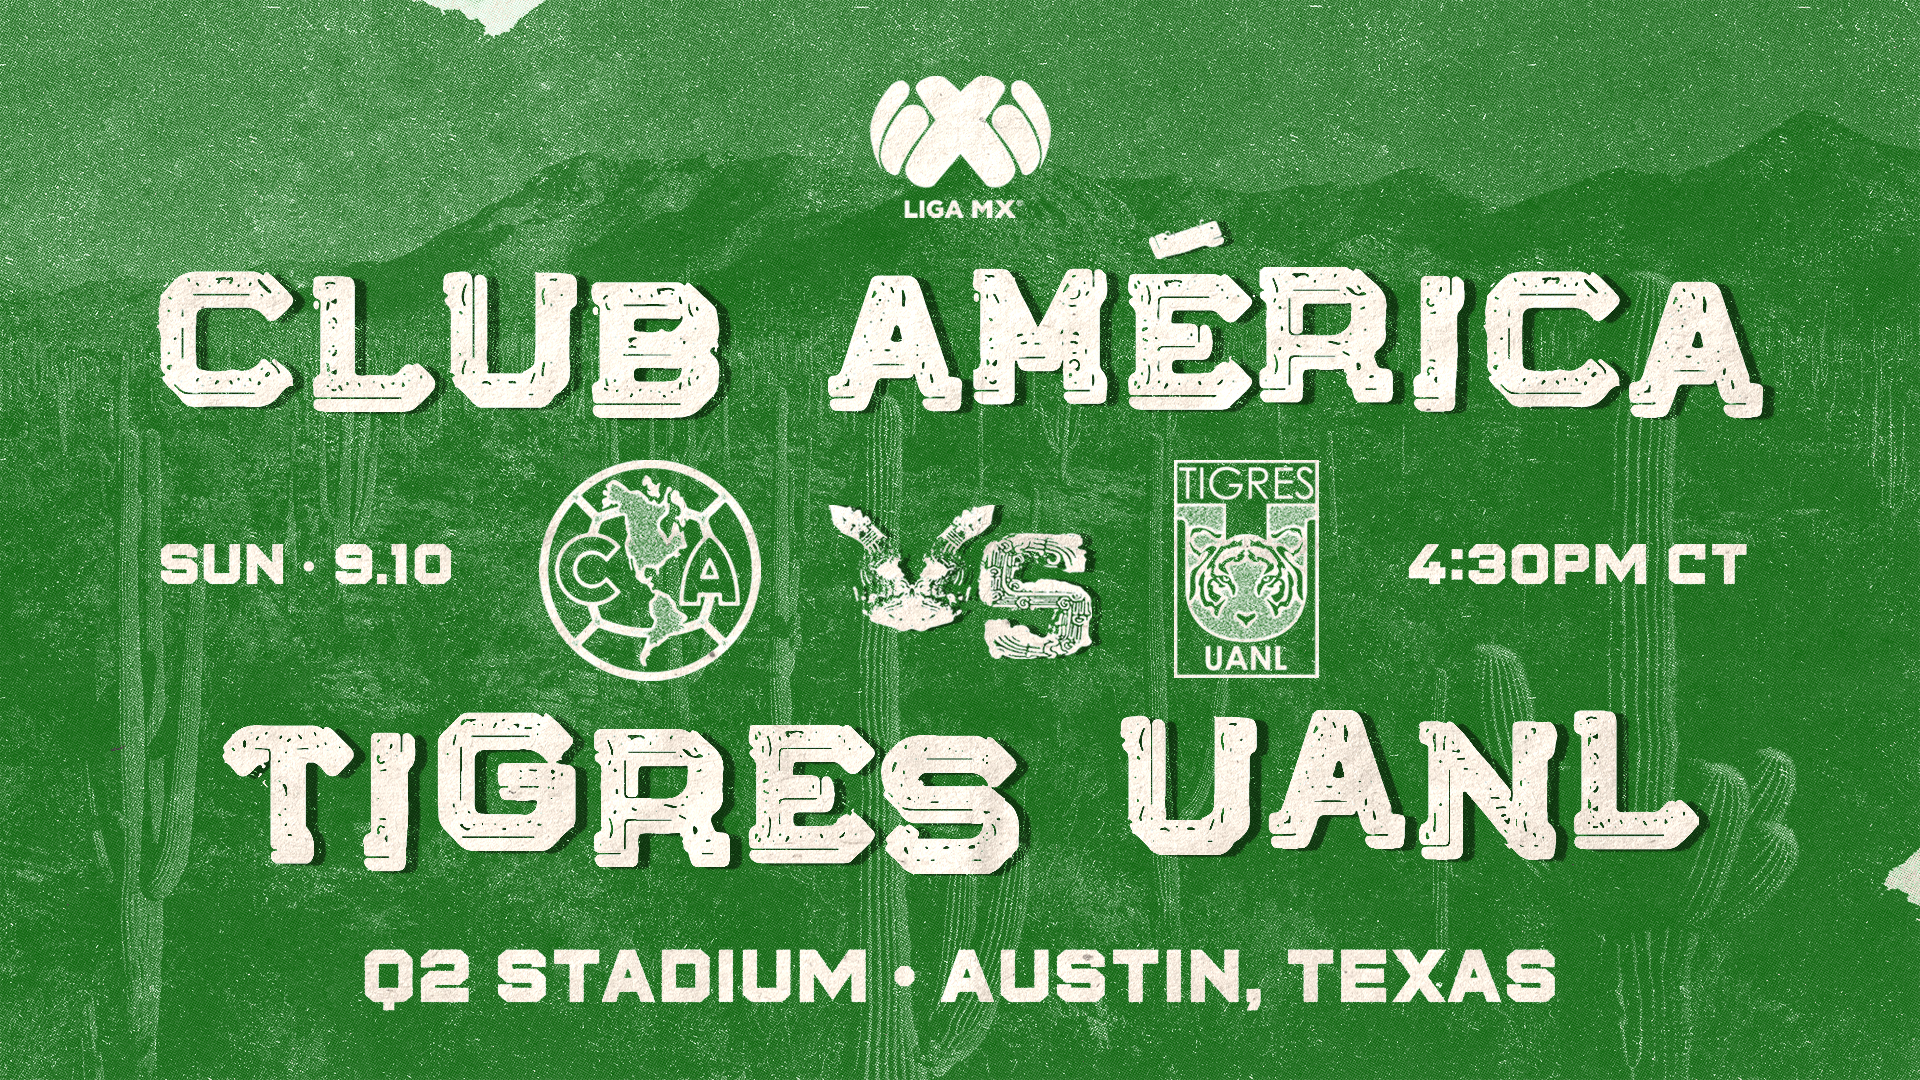 Tour Águila: Club América vs. Tigres UANL - Q2 Stadium